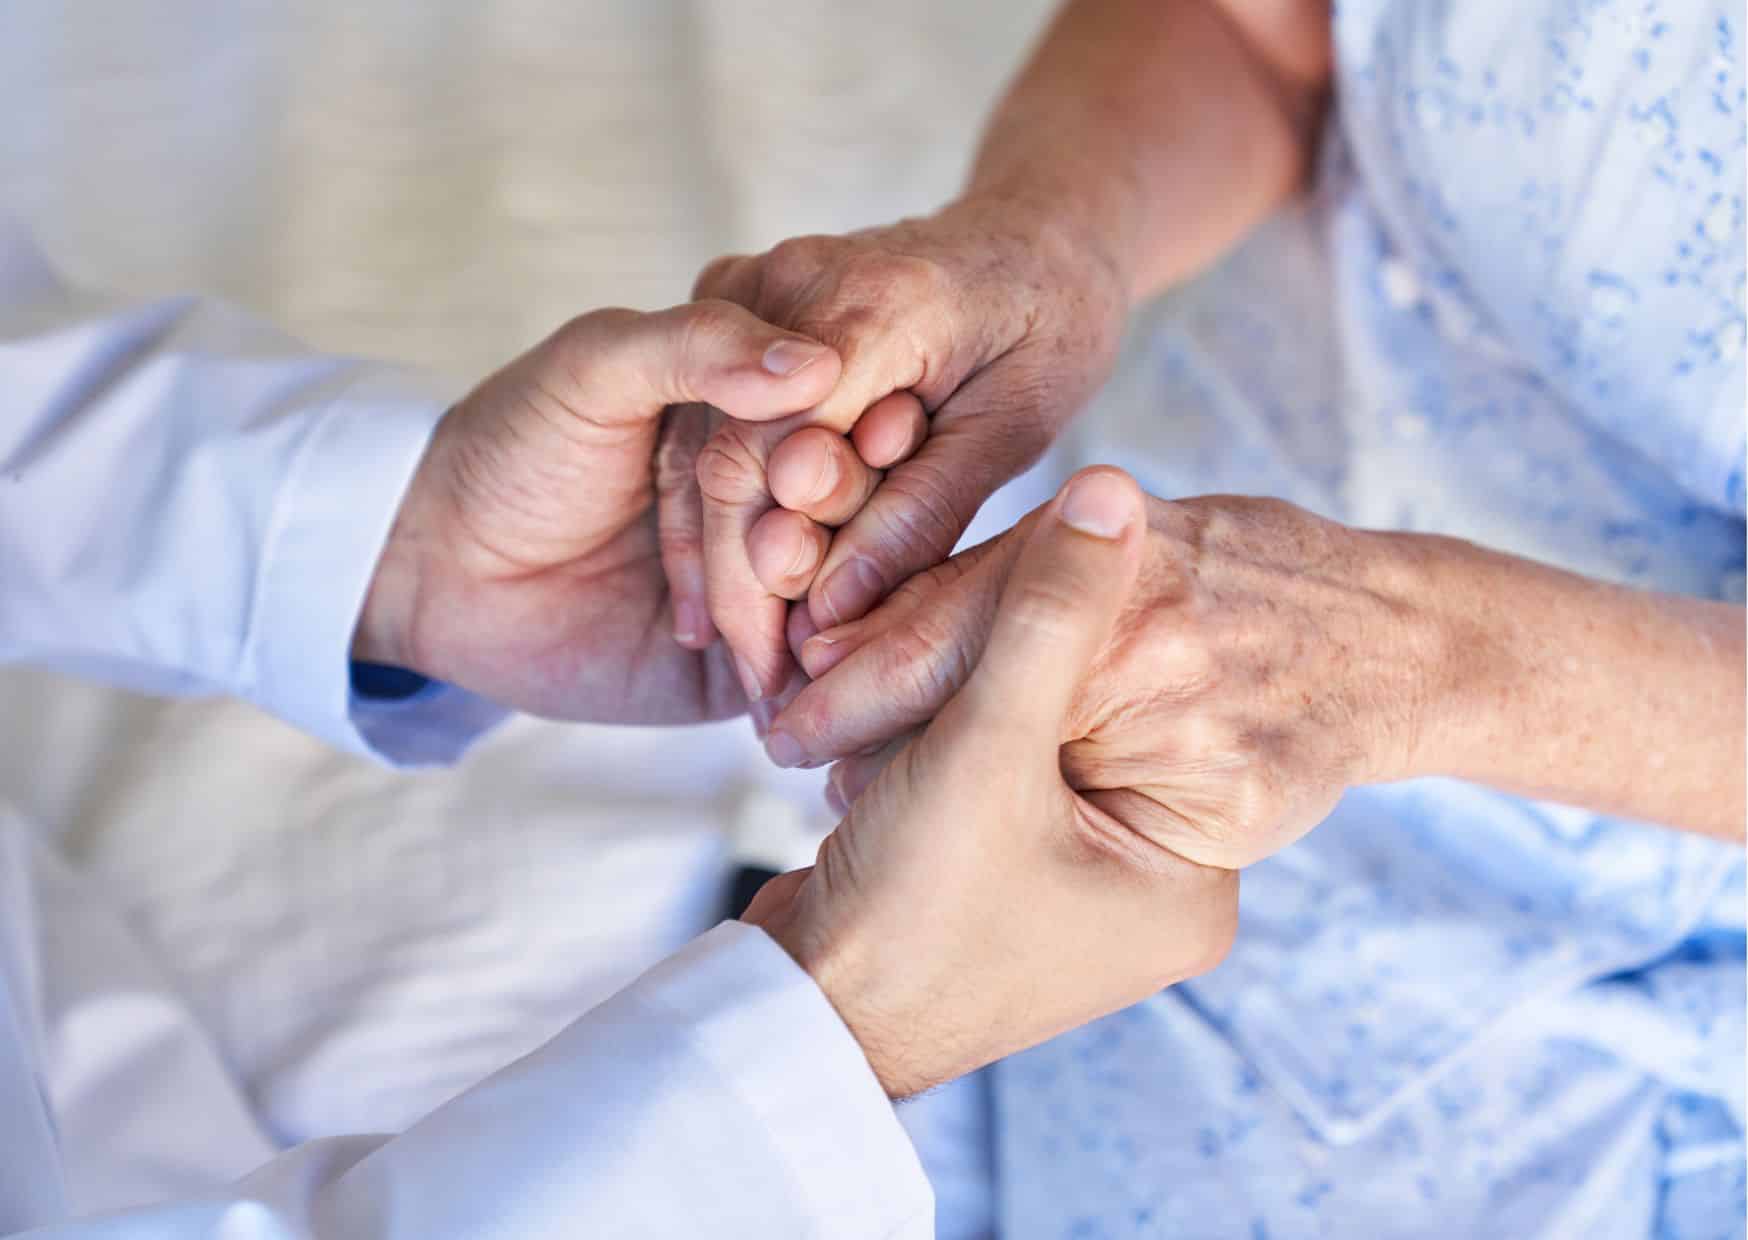 quelles sont les raisons et les motivations dans une demande d’euthanasies ?